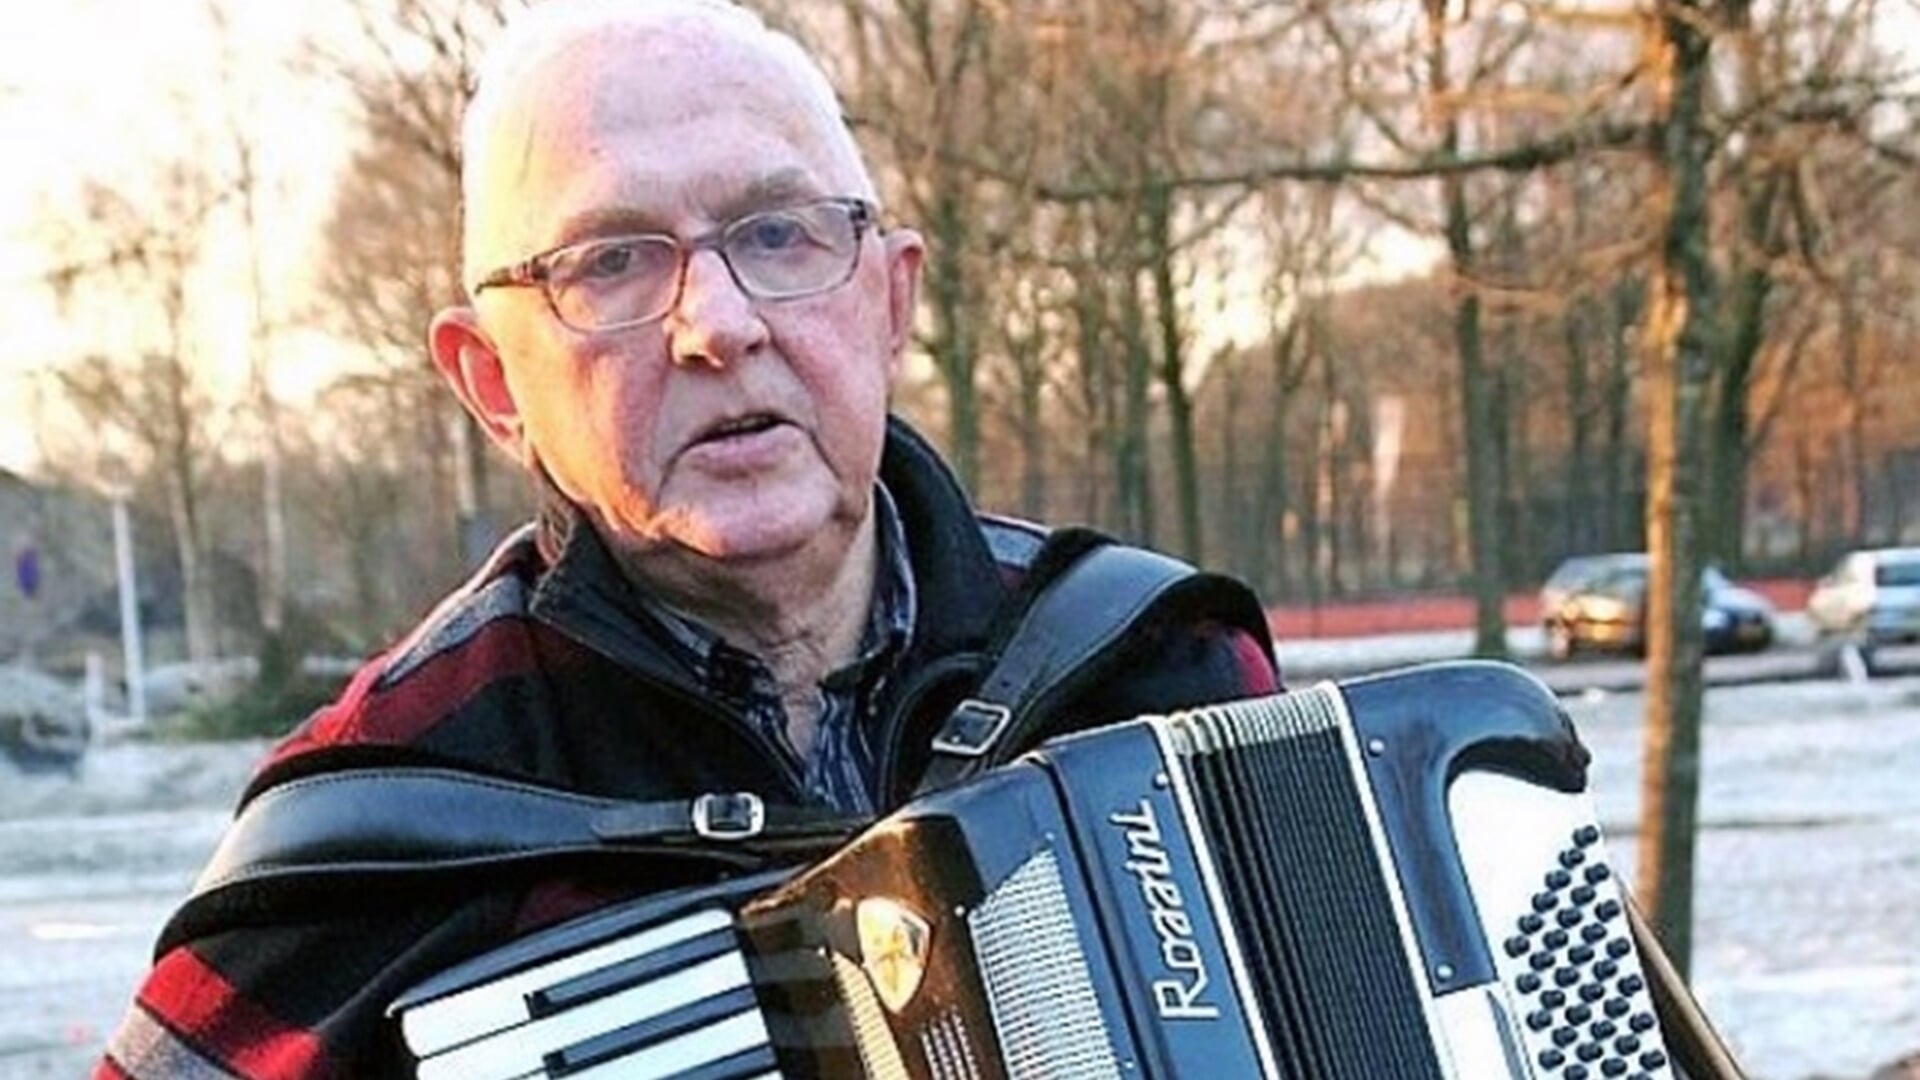 De inmiddels overleden Riemer Veldkamp, initiatiefnemer van het accordeonfestival in Bakkeveen.